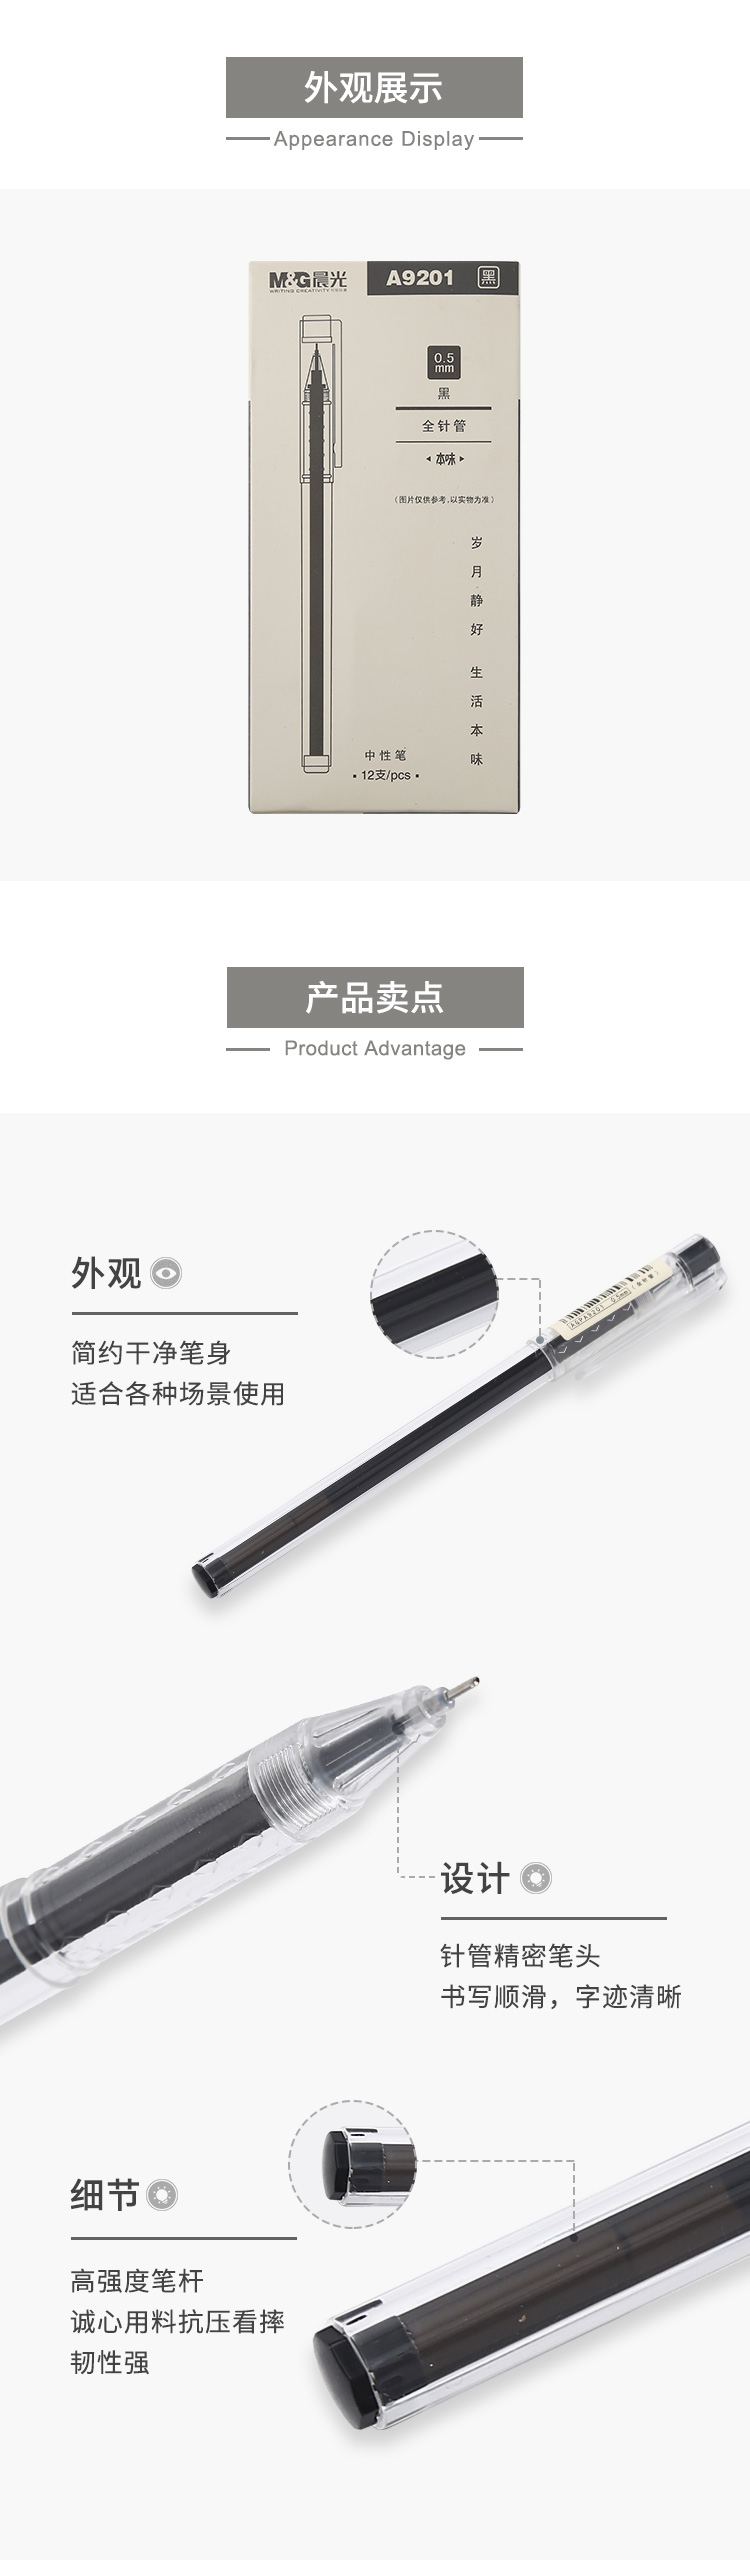 晨光/M&amp;G 本味中性笔AGP9201    0.5mm中性笔 12支装